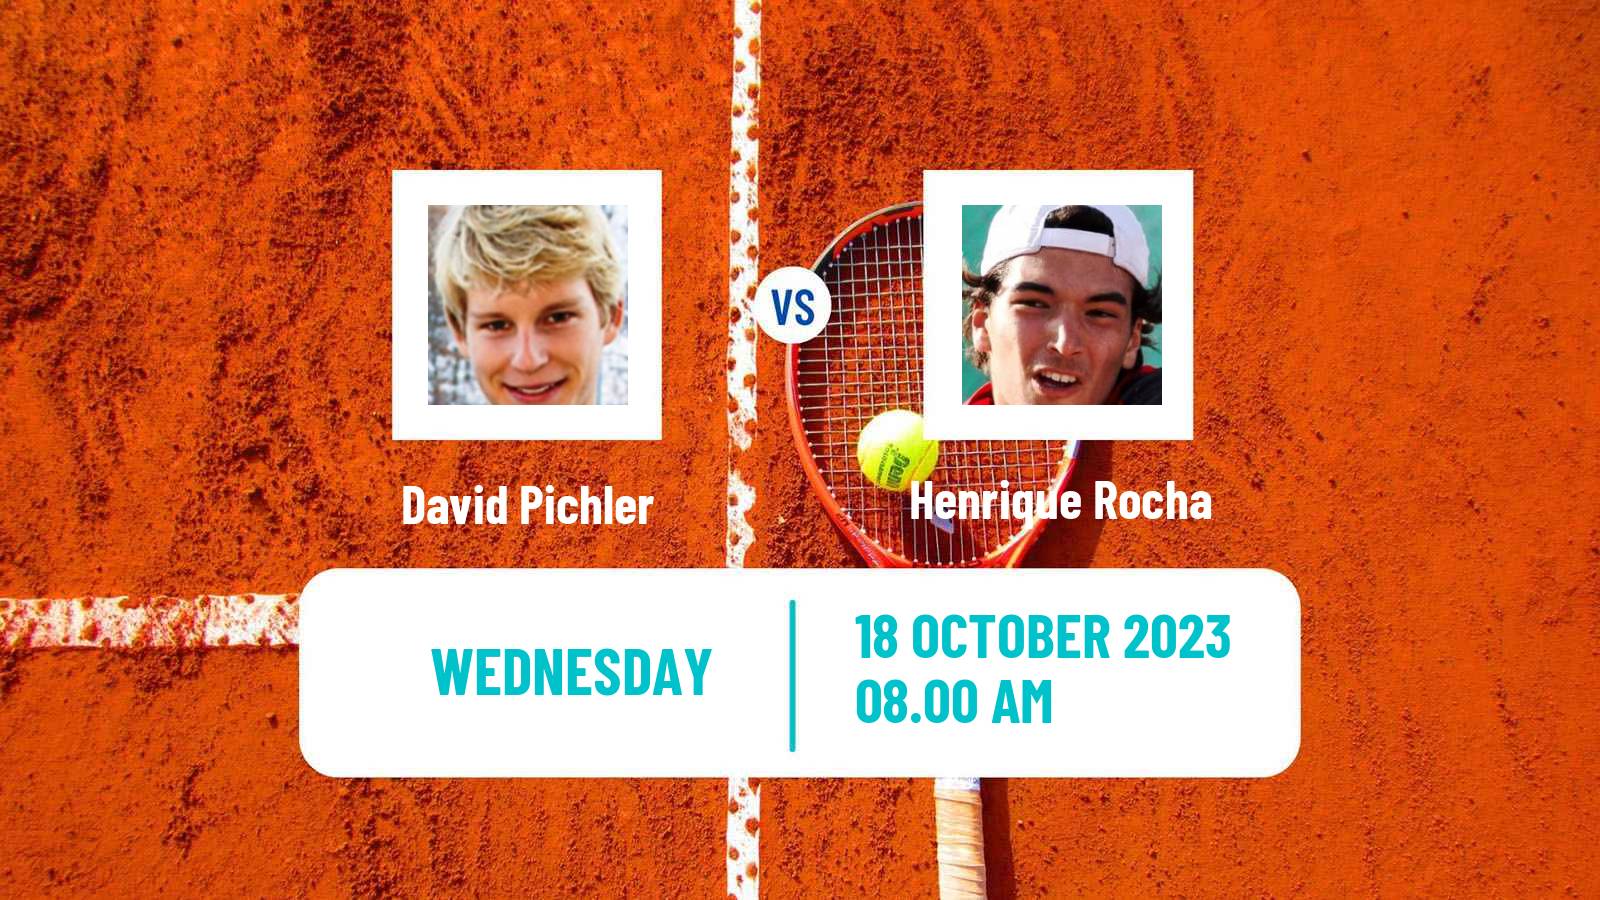 Tennis ITF M25 Tavira 2 Men David Pichler - Henrique Rocha